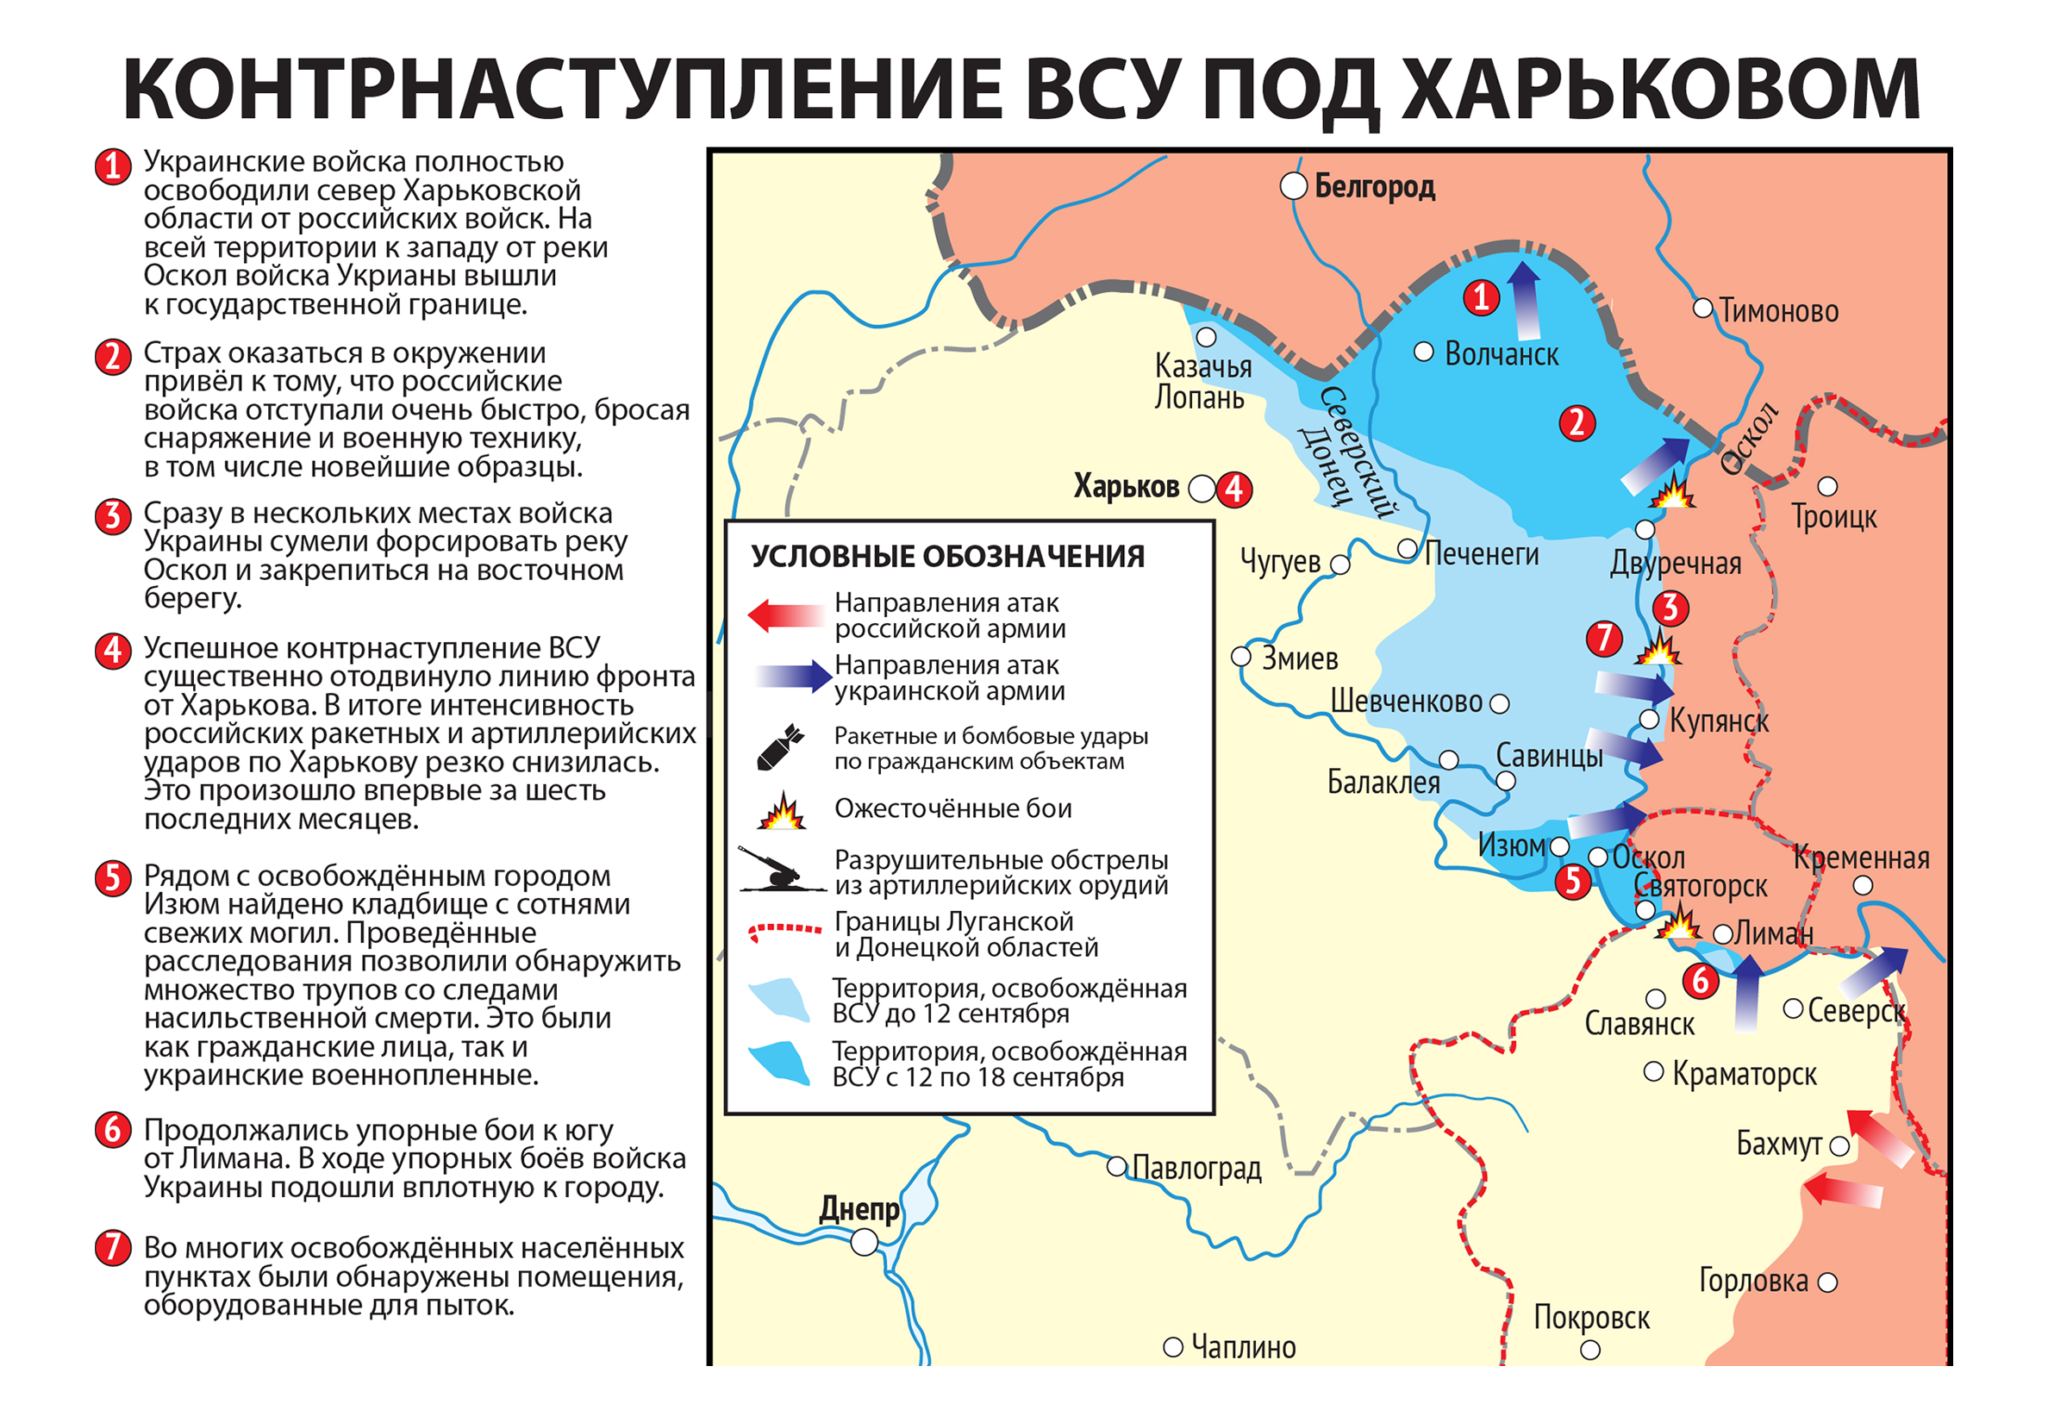 Карта значимых событий войны в Харьковской области Украины 12−18 сентября 2022 года.